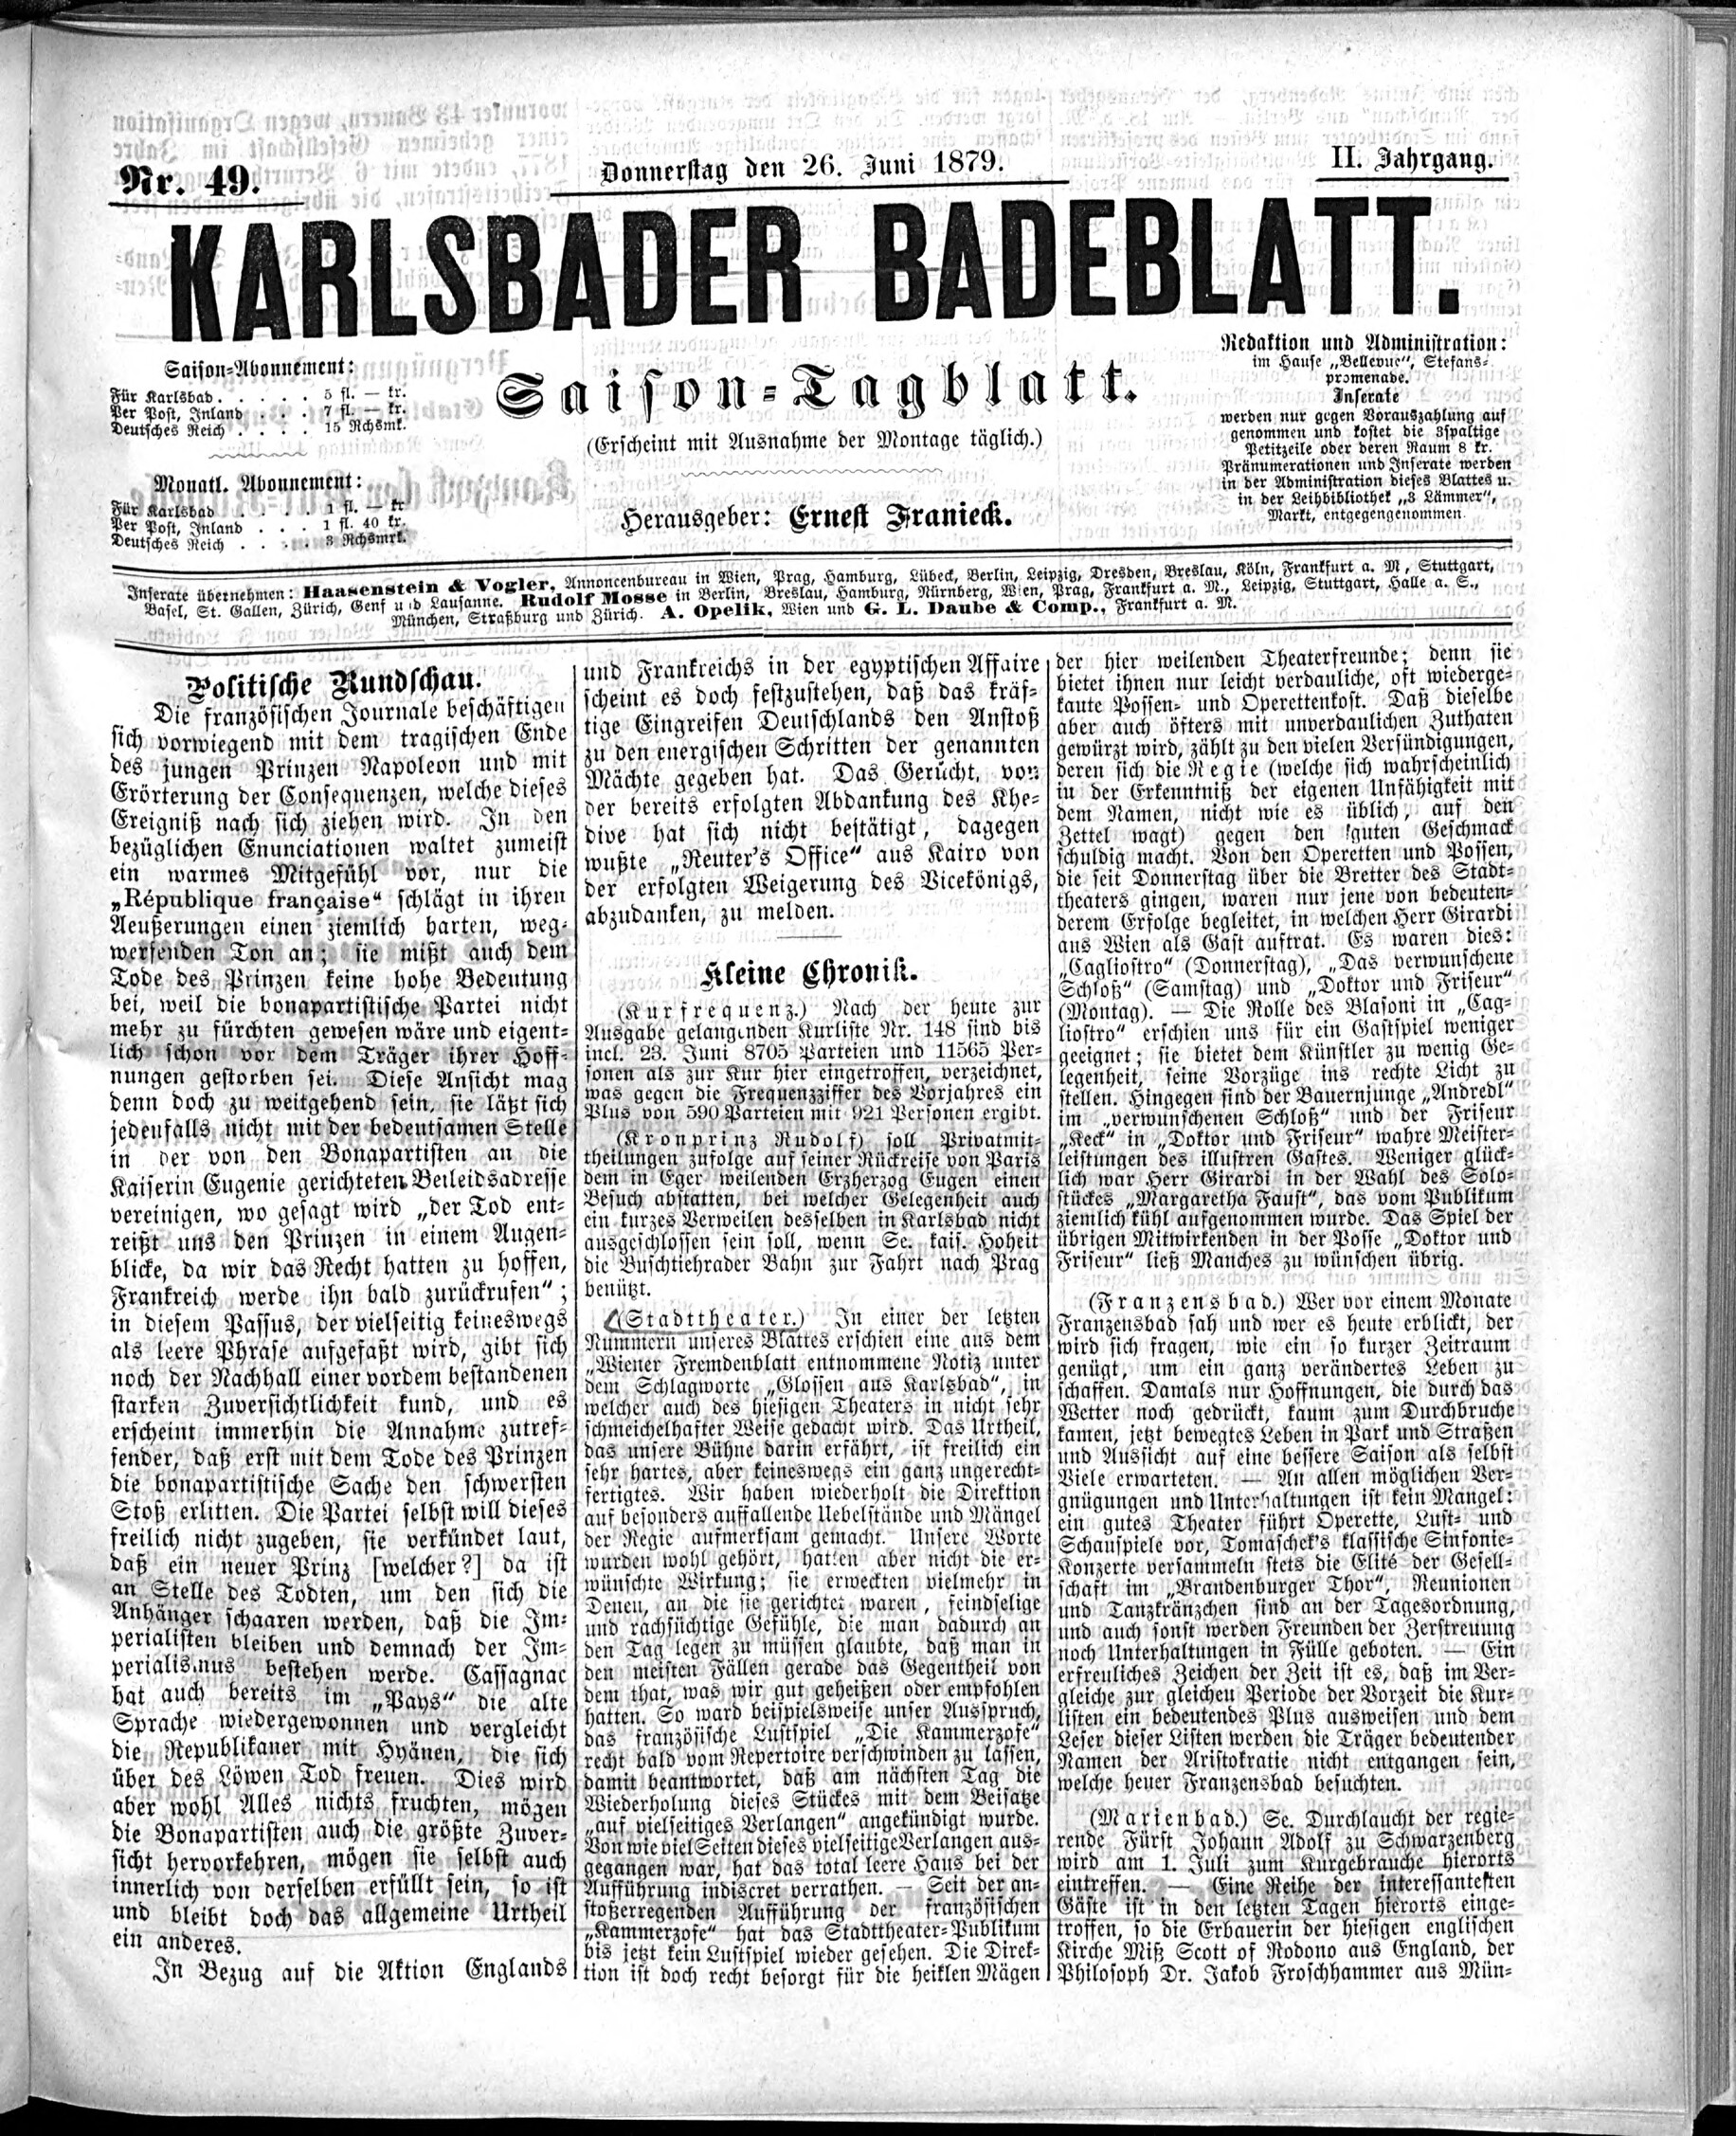 1. karlsbader-badeblatt-1879-06-26-n49_1035